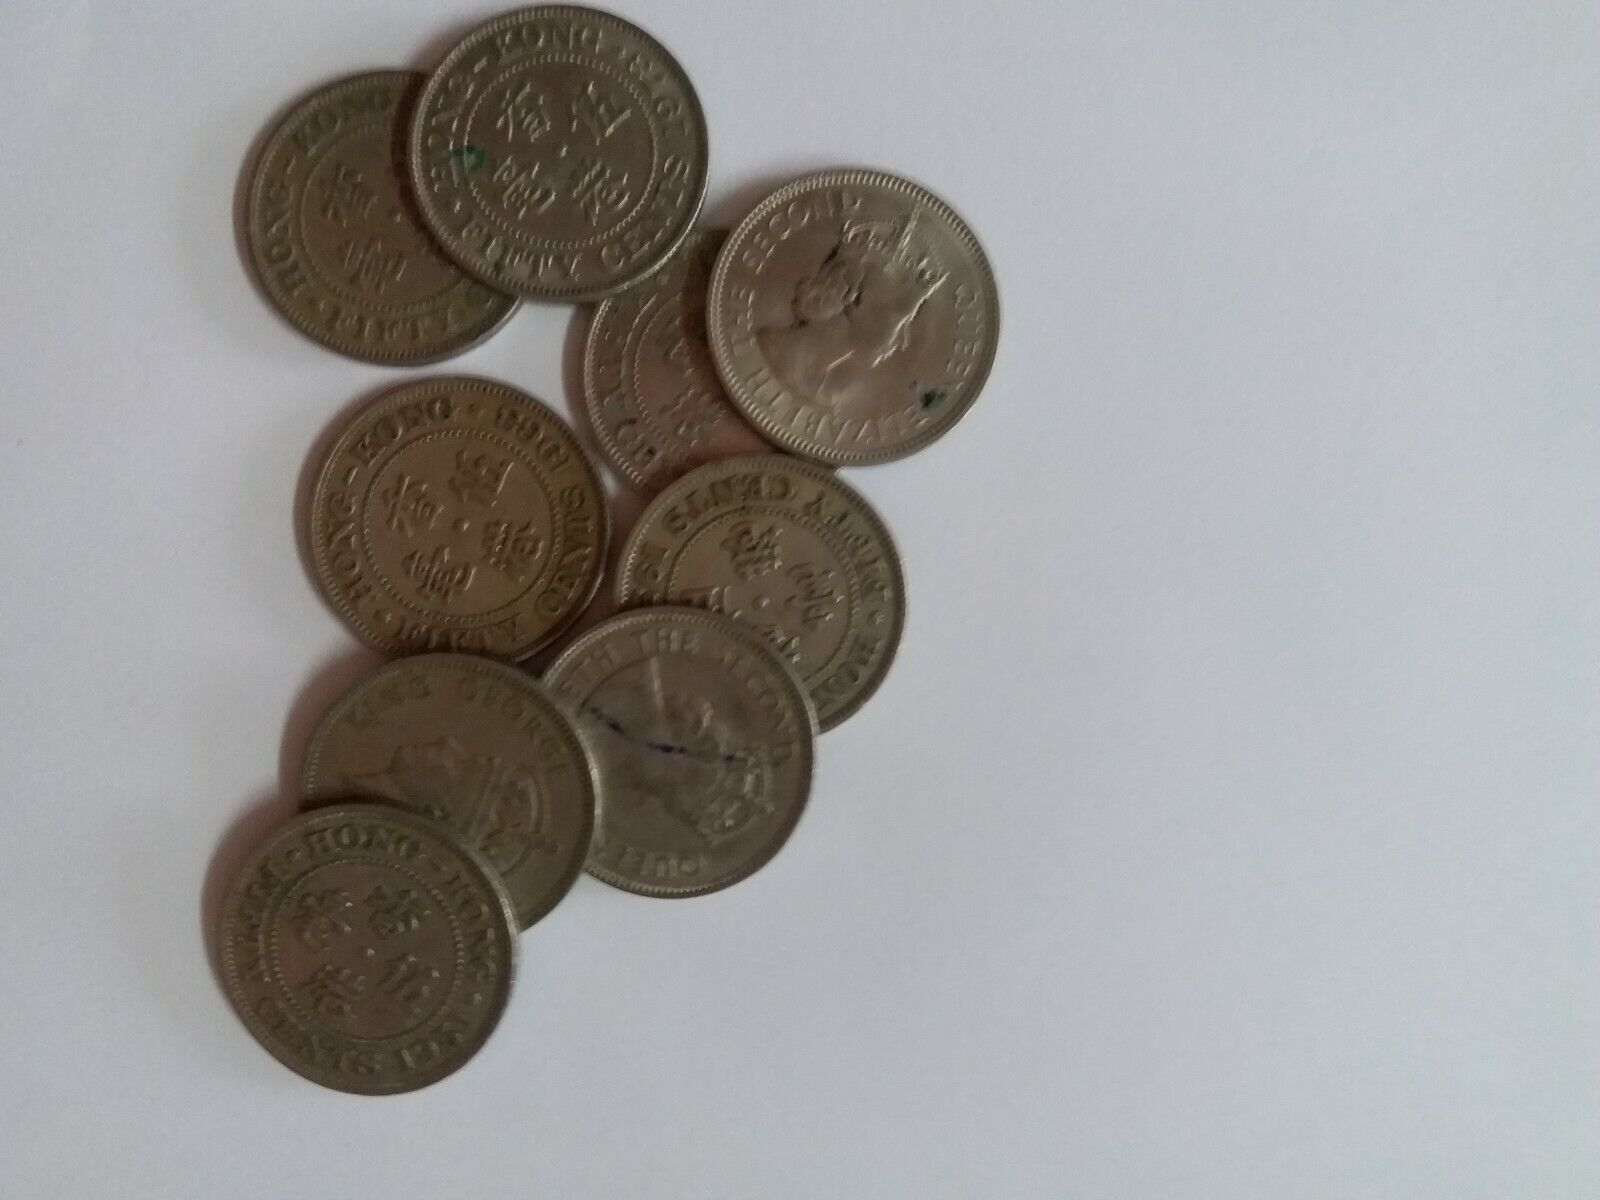 Hong Kong British colonial era Hong Kong coin 50 cents Silver 9 pcs uncirculated